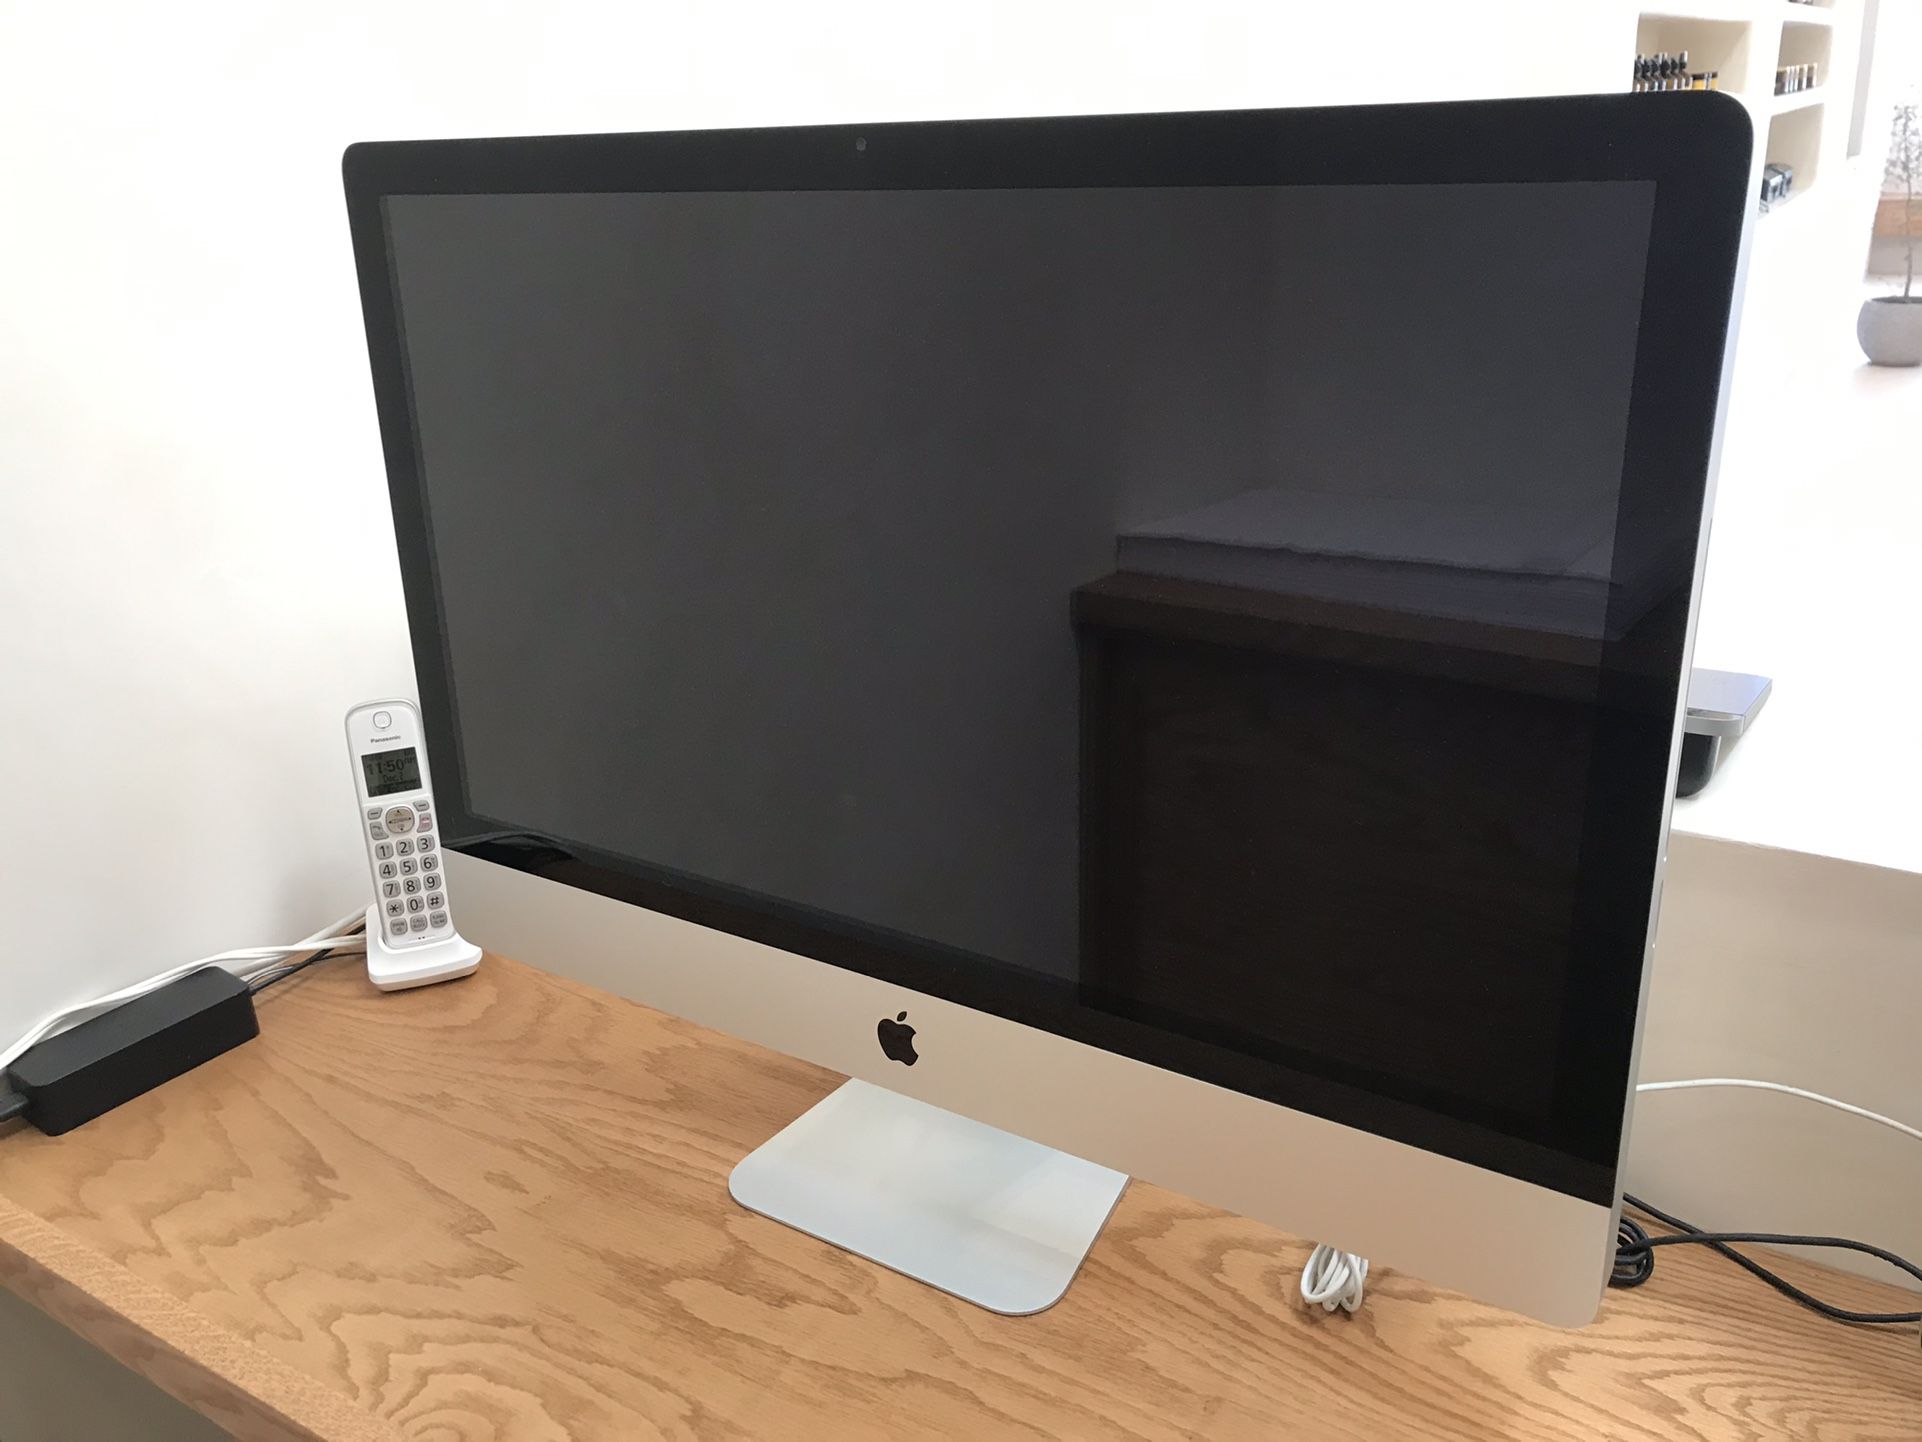 iMac 27 inch Desktop Computer